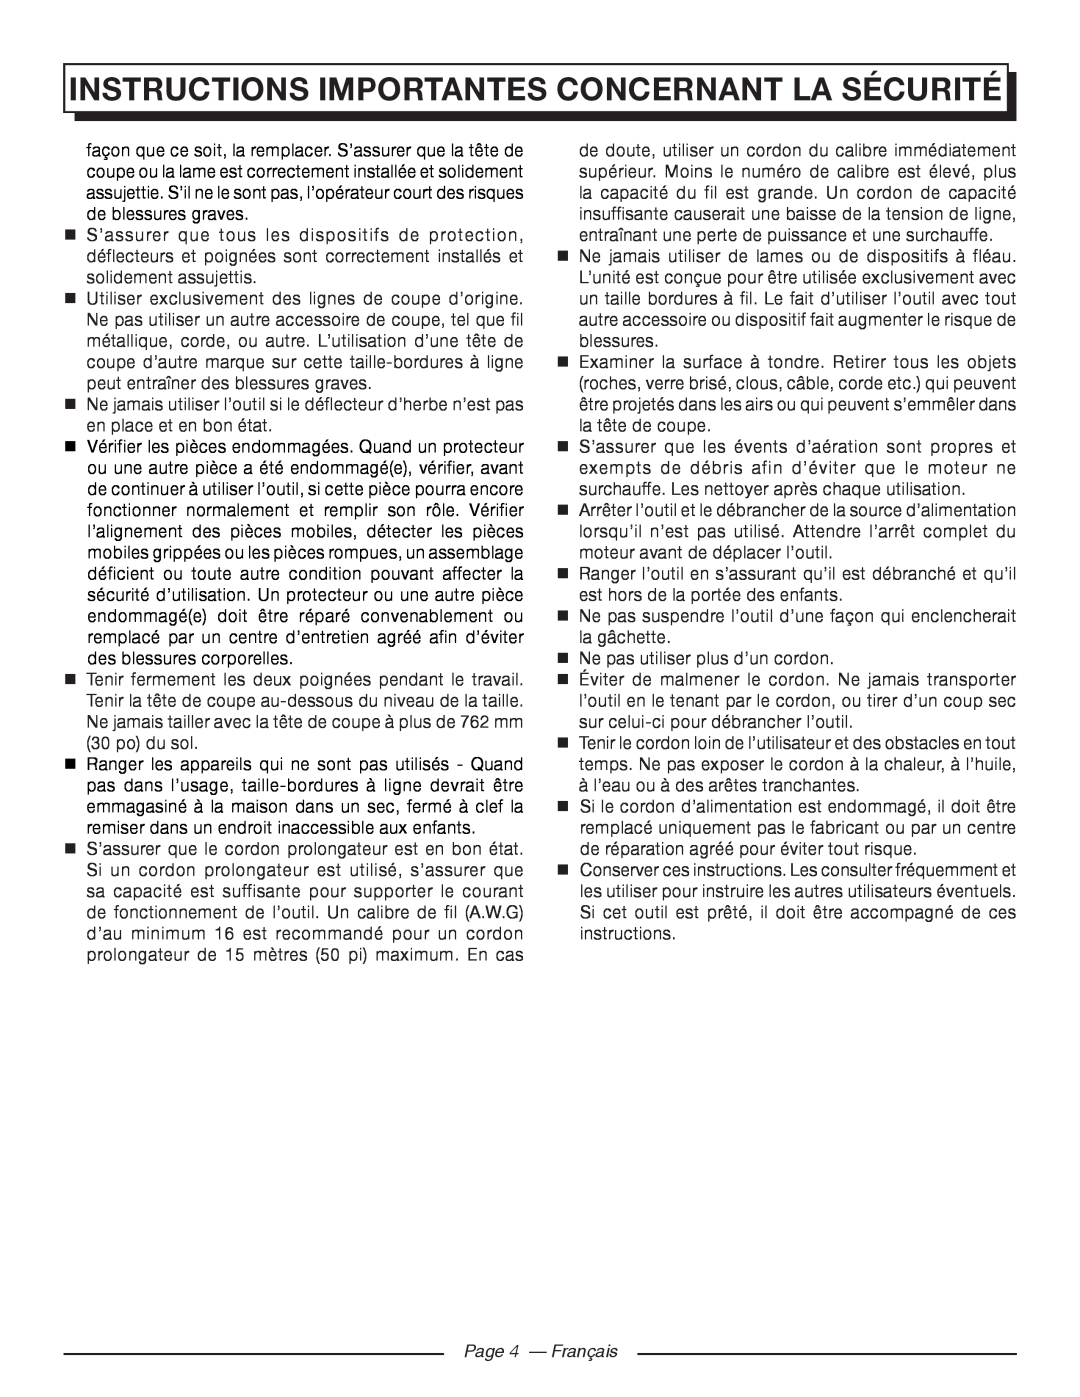 Homelite UT41112 manuel dutilisation Page 4 - Français, Instructions Importantes Concernant La Sécurité 